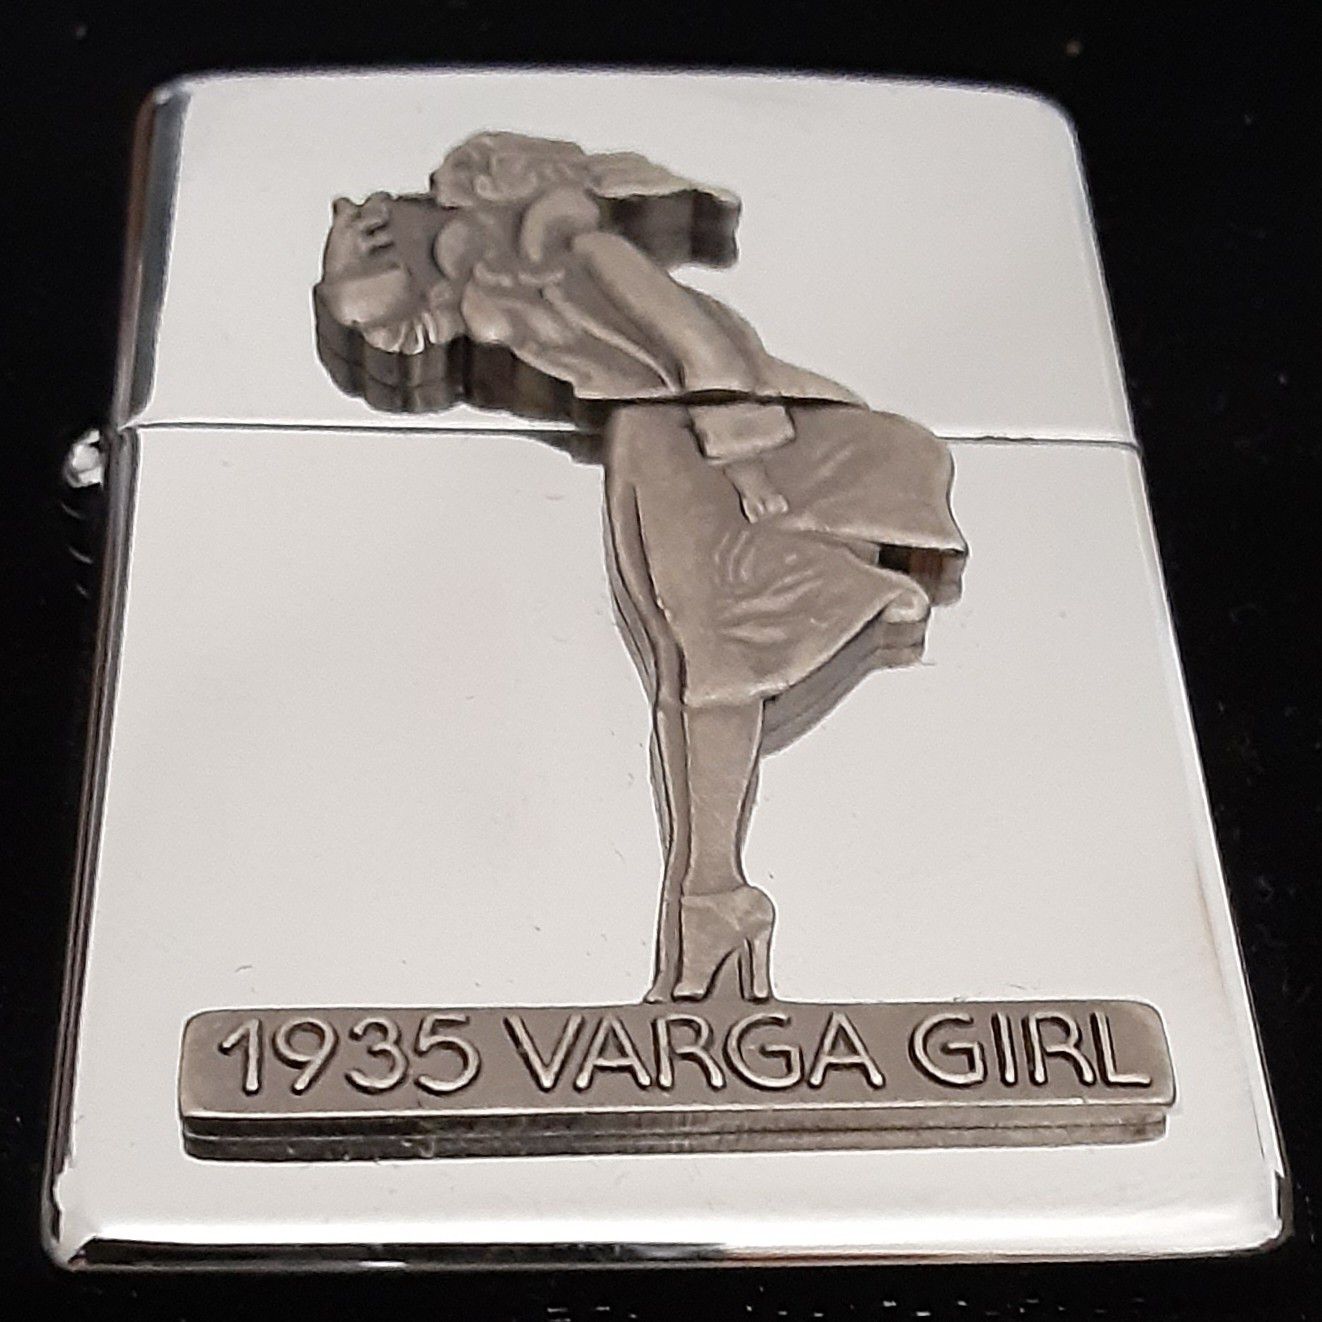 1994 Zippo lighter "The Varga Girl 1935"